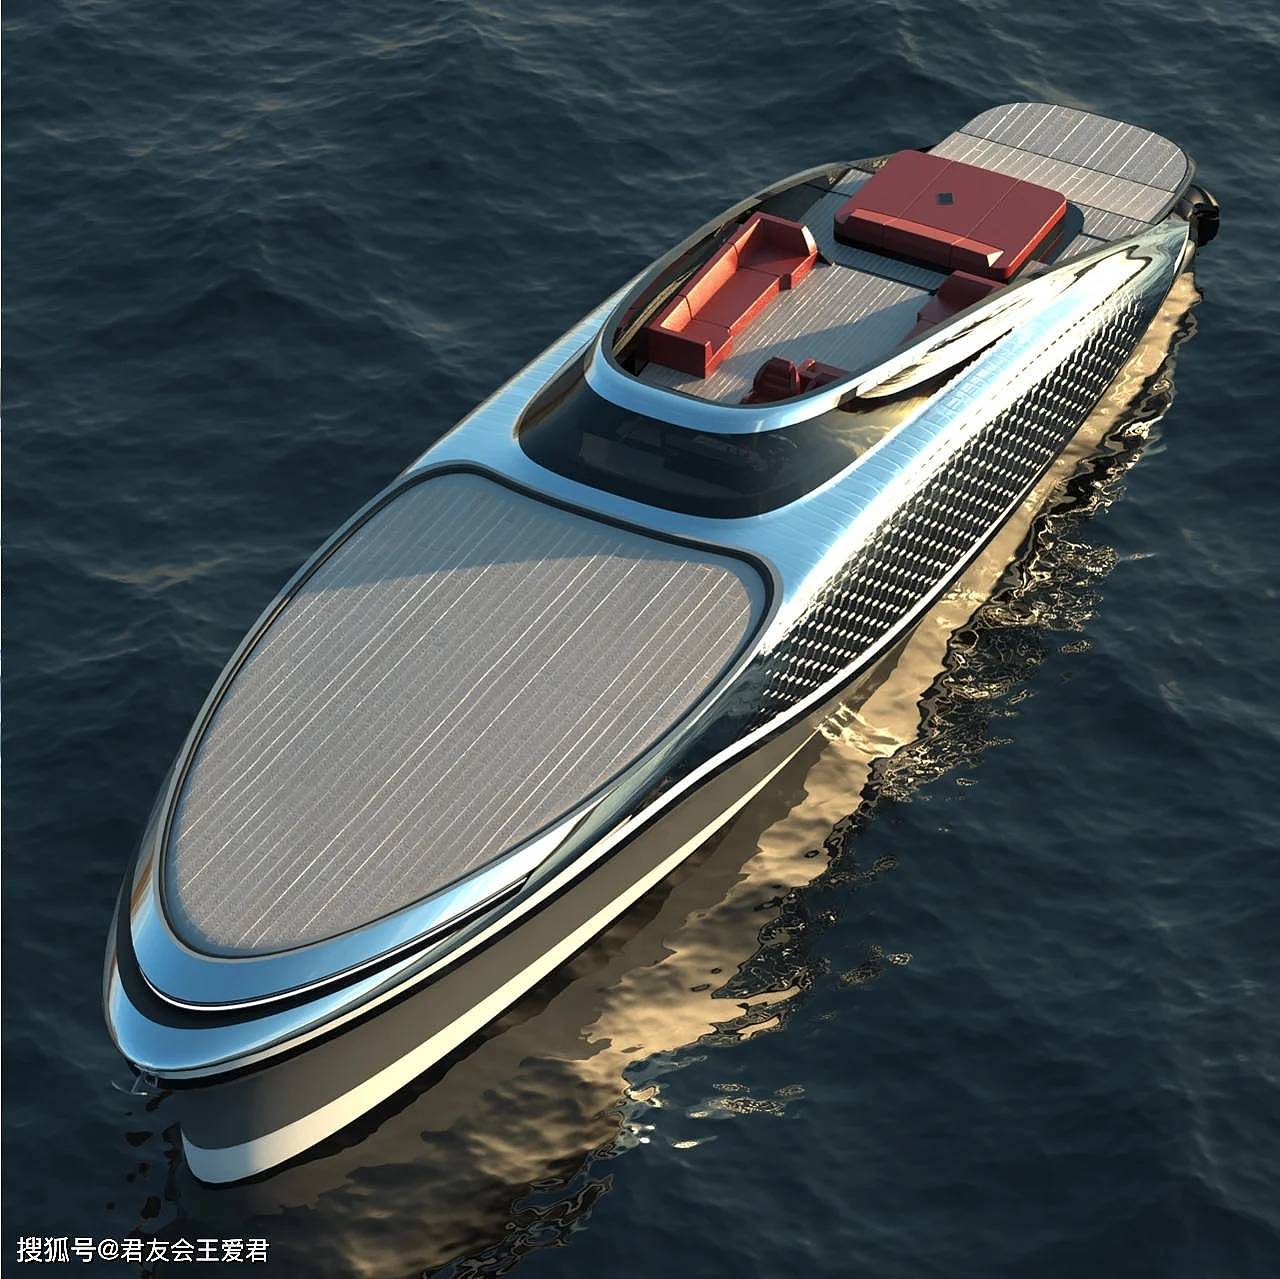 专才资源第14期-产品设计-24米长的超级透明游艇 - 3